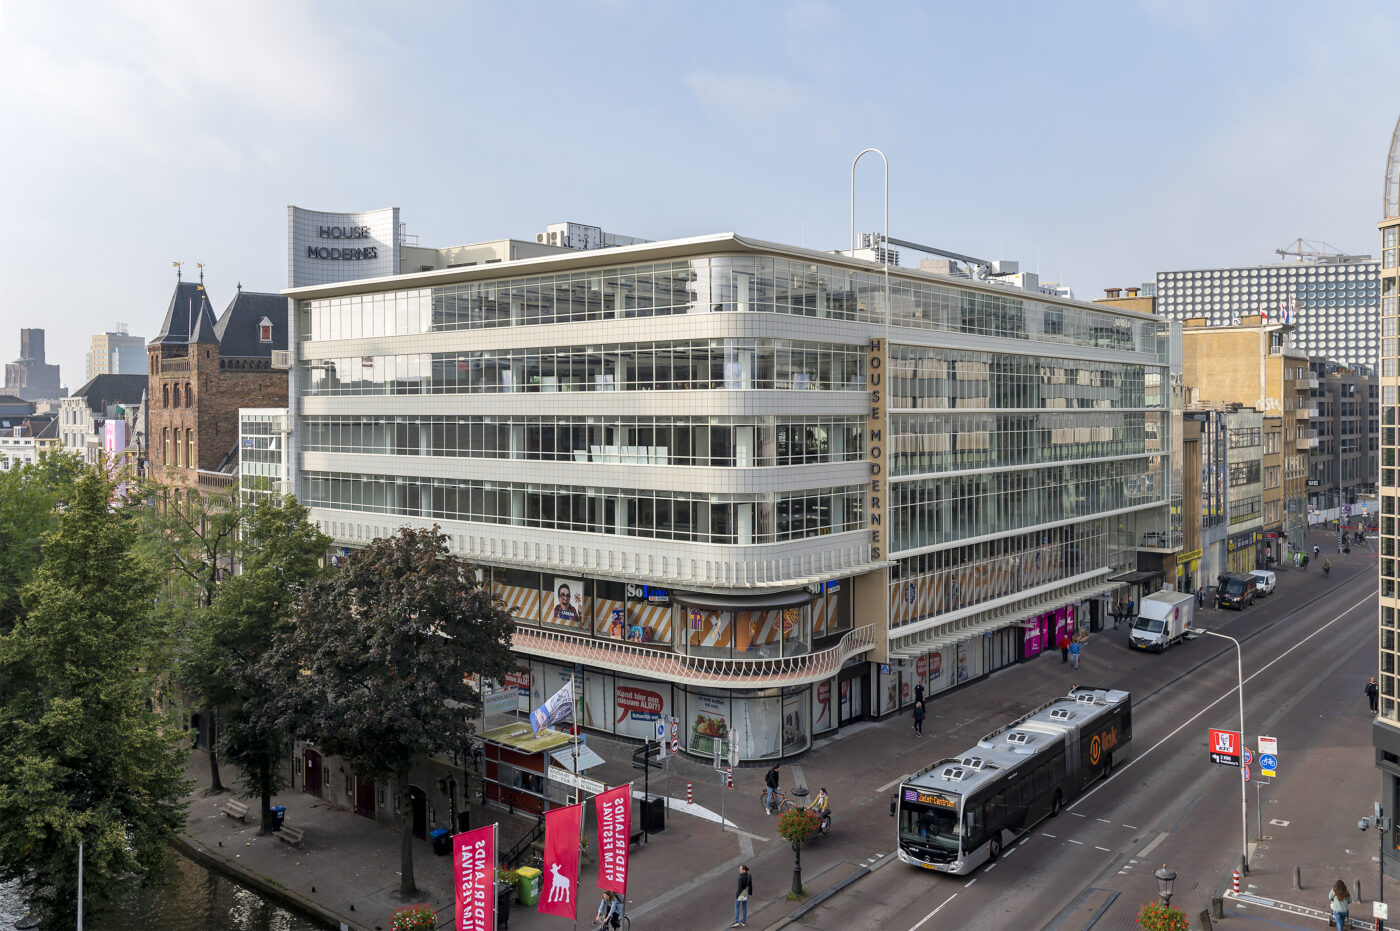 Het oude Galeries Modernes is als House Modernes weer een parel in de Utrechtse binnenstad, waarbij met name het historische gevelbeeld in ere is hersteld. (Foto: Maartje Brand / Brandbeeld)